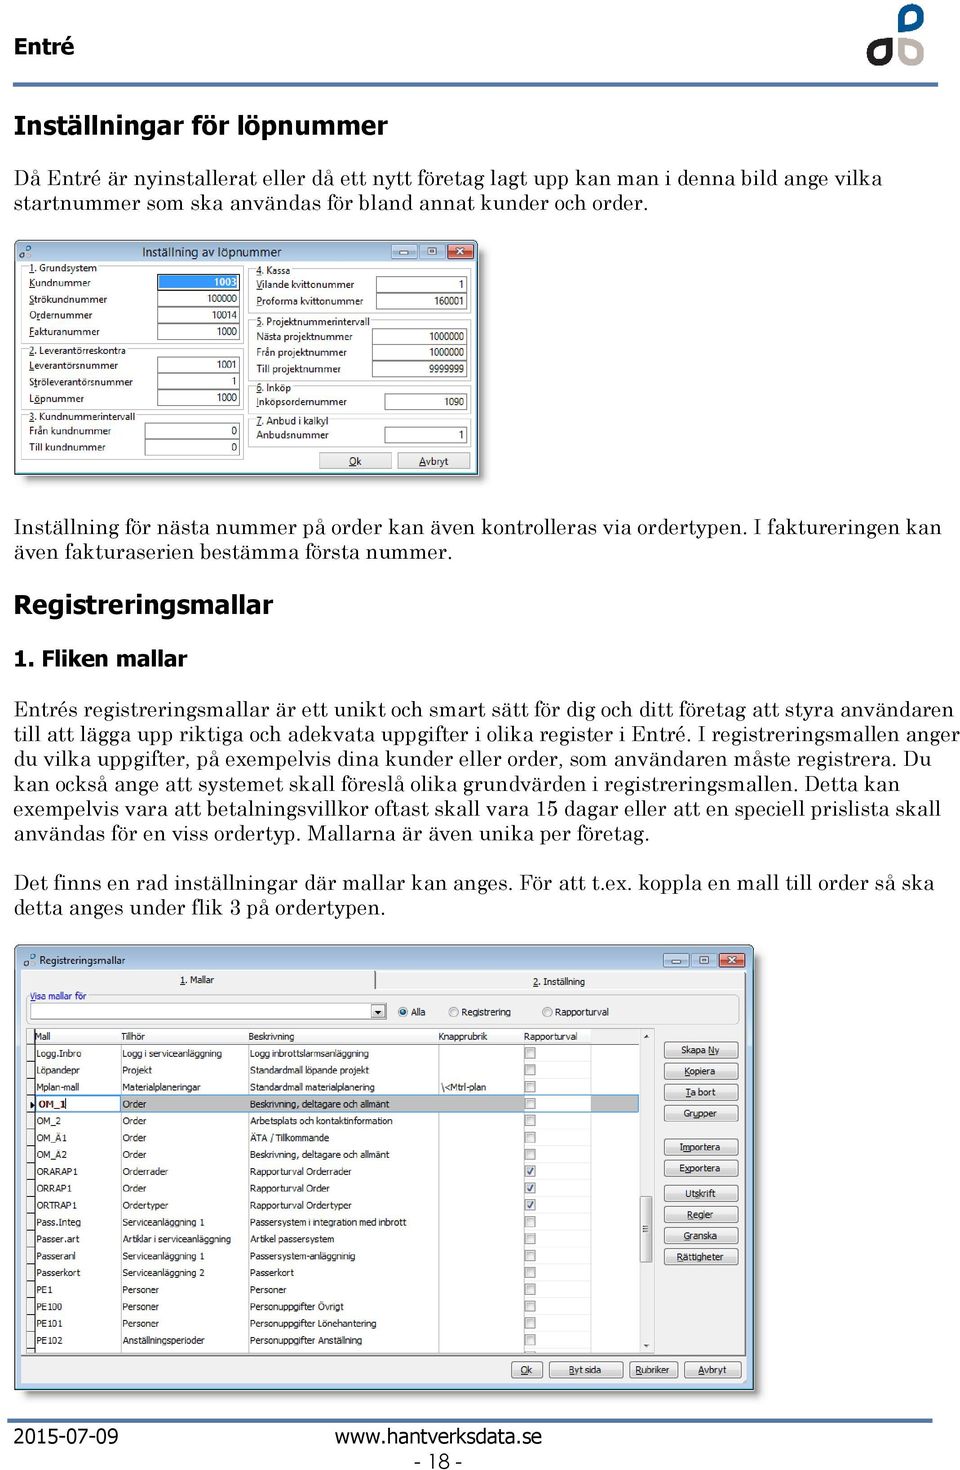 Fliken mallar Entrés registreringsmallar är ett unikt ch smart sätt för dig ch ditt företag att styra användaren till att lägga upp riktiga ch adekvata uppgifter i lika register i Entré.